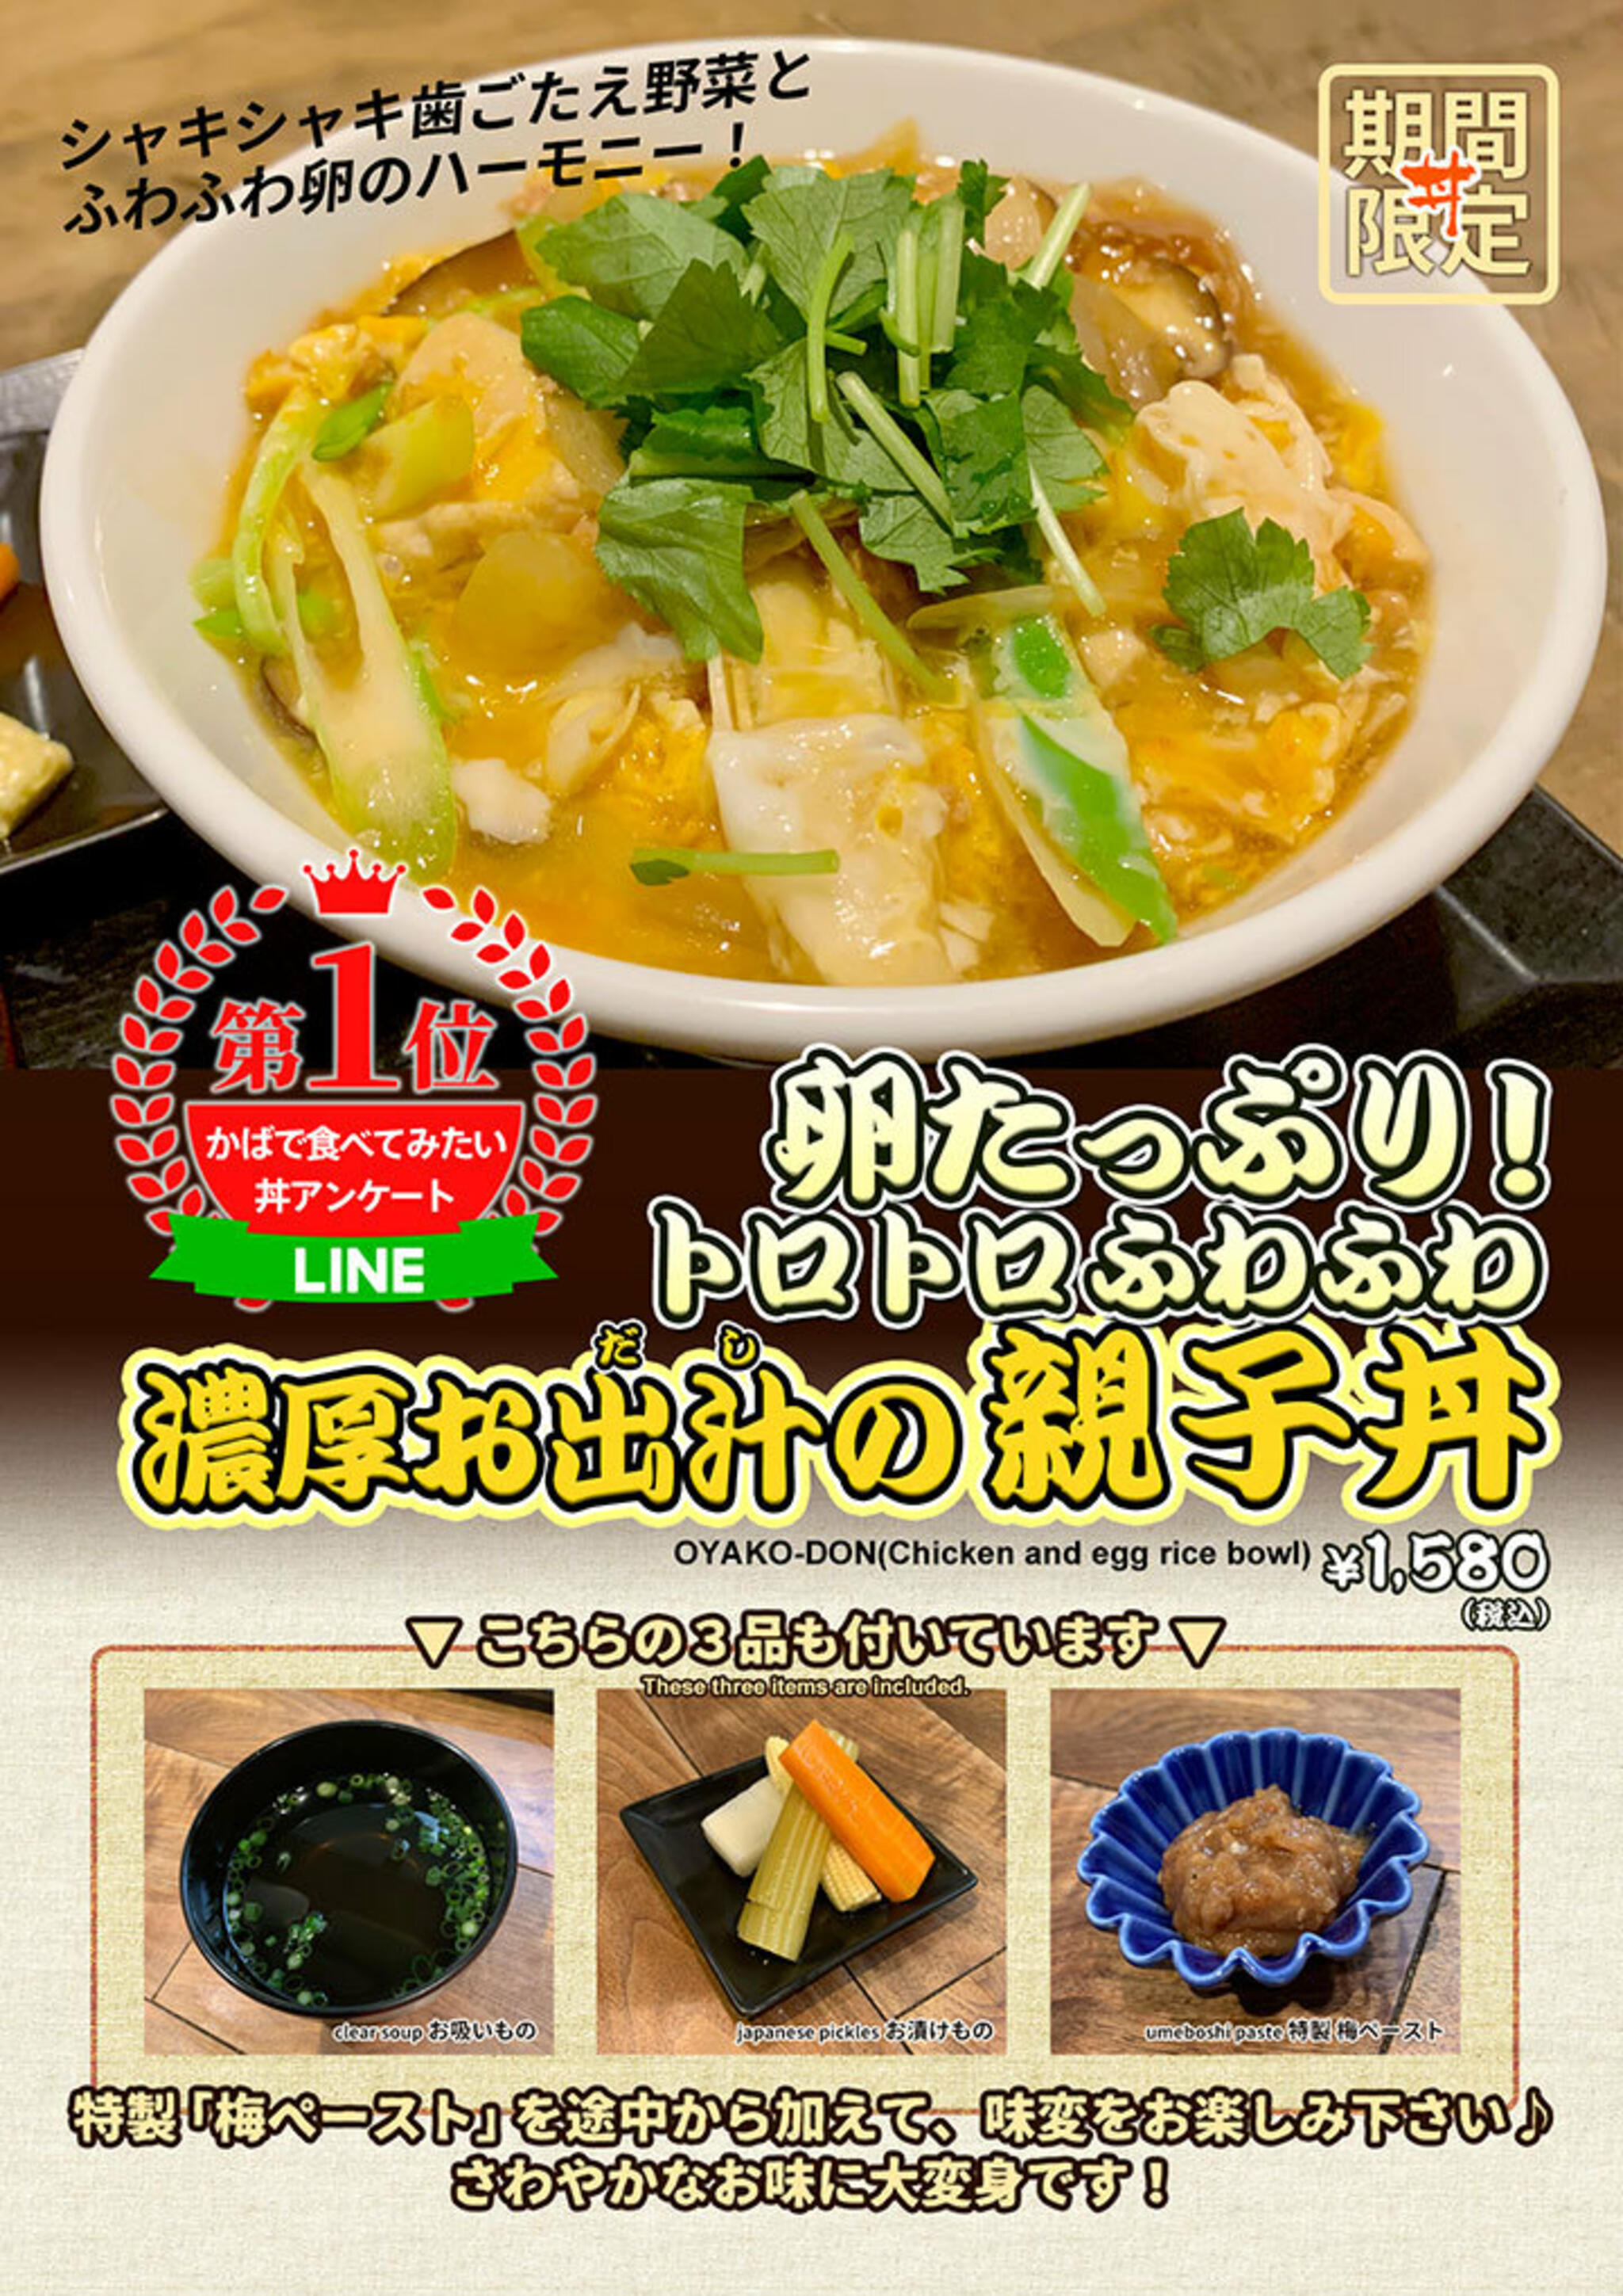 かばのおうどん 横浜元町本店からのお知らせ(「かばで食べてみたい丼アンケート」第1位が、ついに販売！)に関する写真